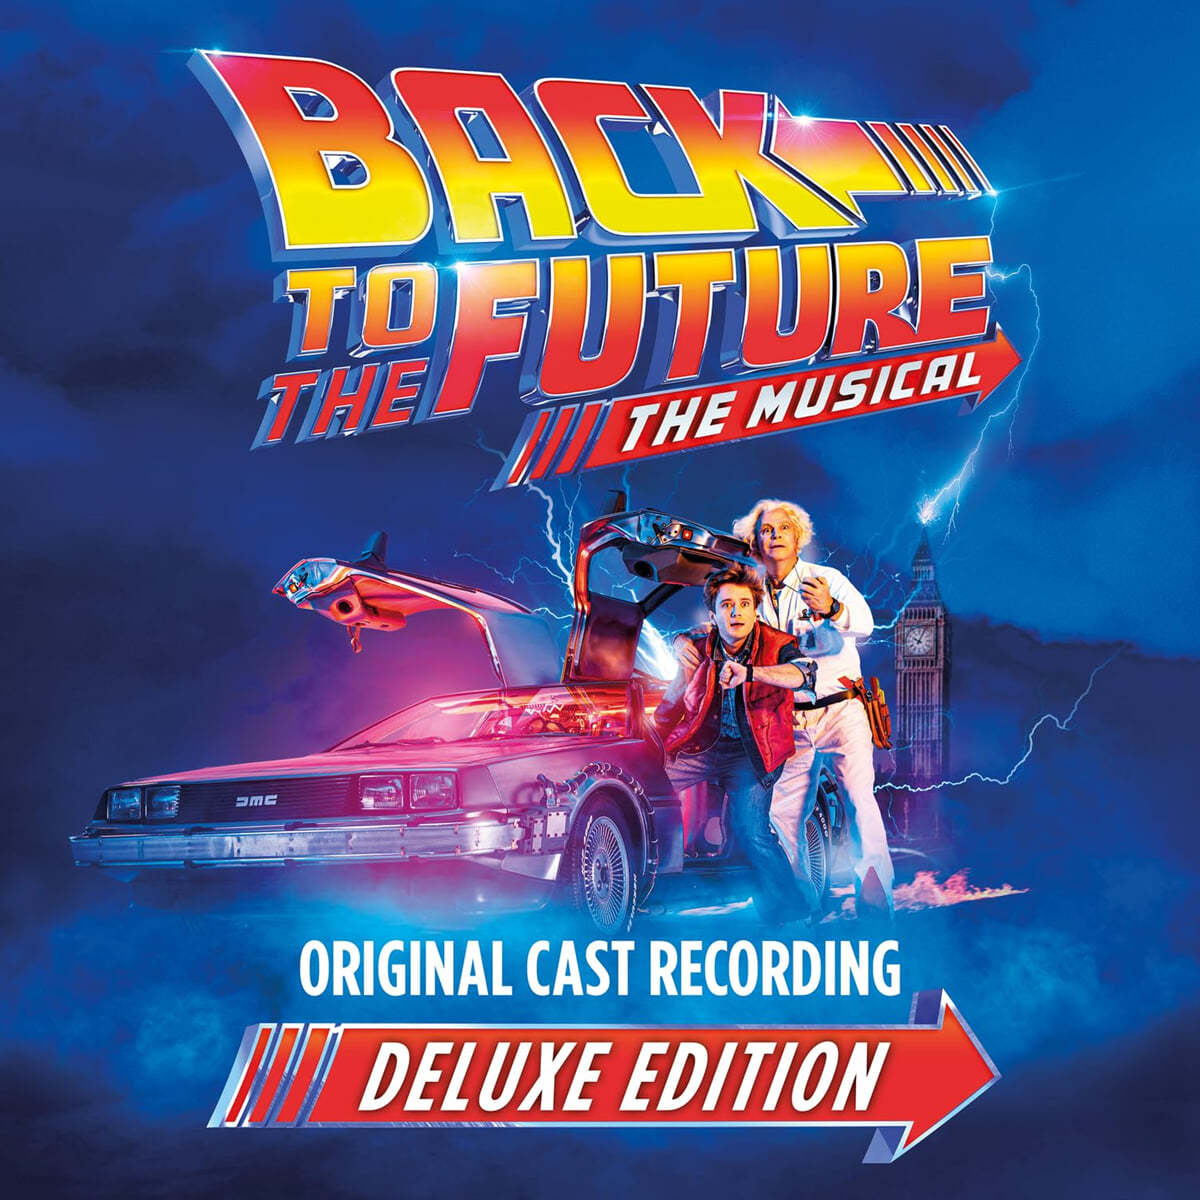 백 투 더 퓨쳐: 더 뮤지컬 뮤지컬음악 (Back to the Future: The Musical OST) 